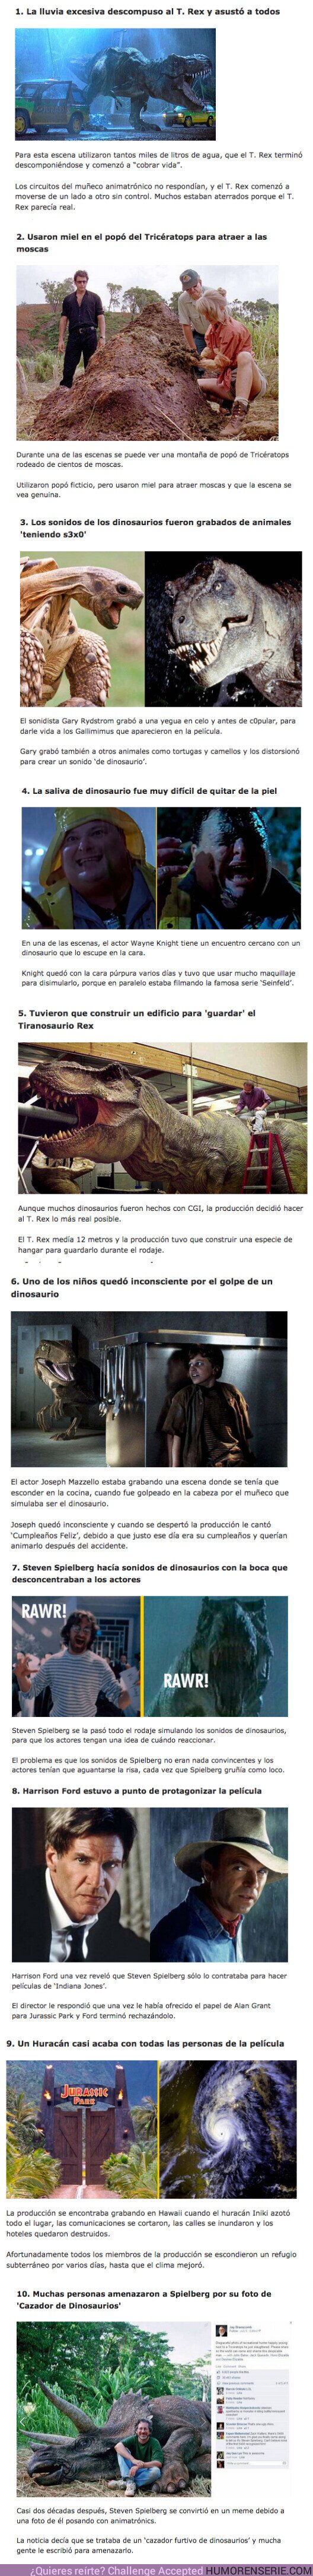 72371 - GALERÍA: 9 Cosas que pasaron durante el rodaje de la primer película de Jurassic Park